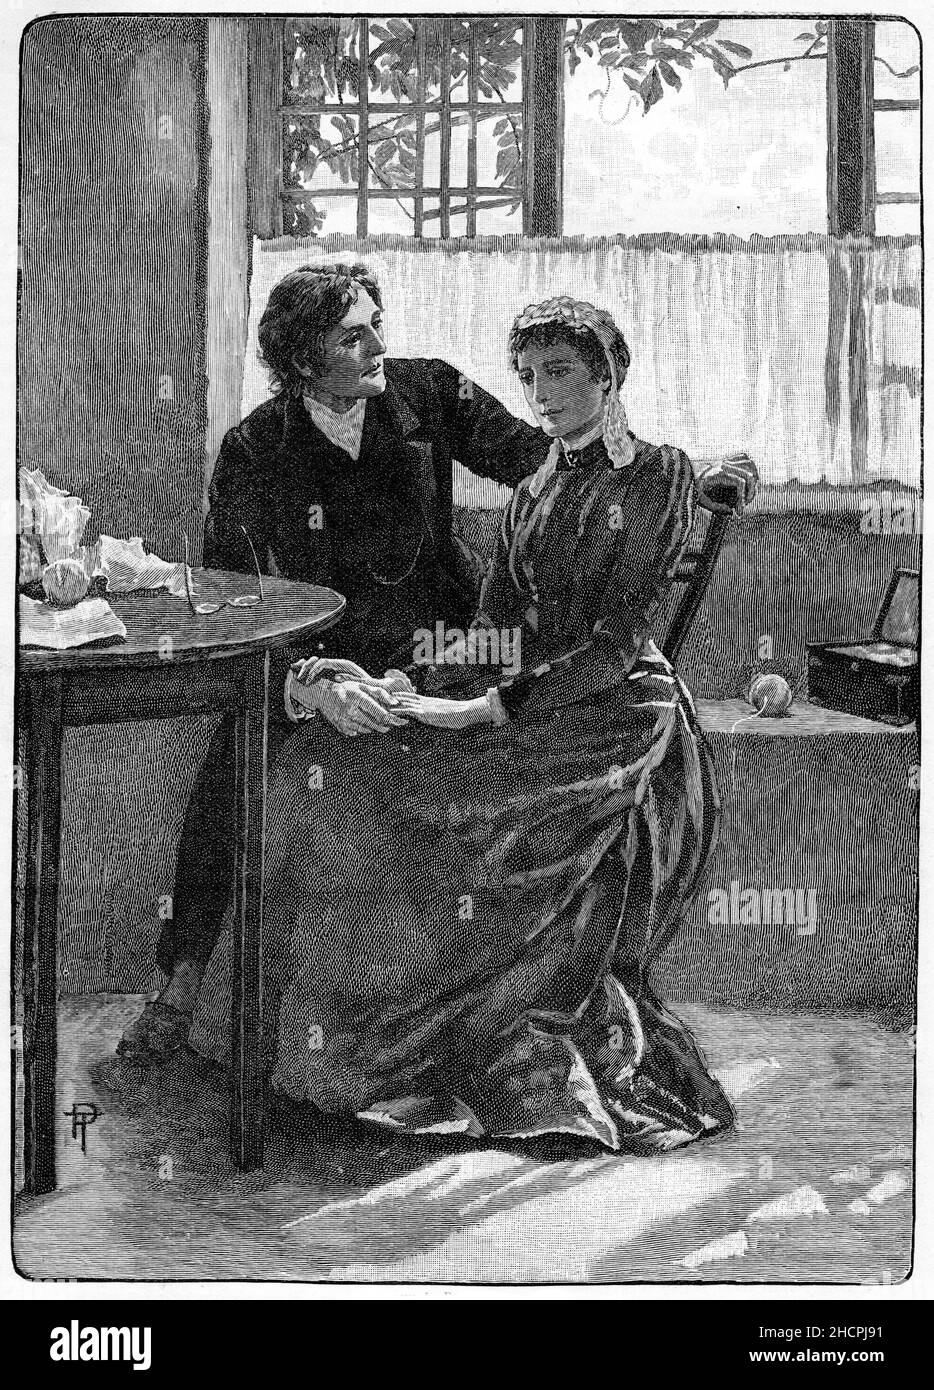 Stich eines älteren Ehepaares, veröffentlicht 1892 Stockfoto